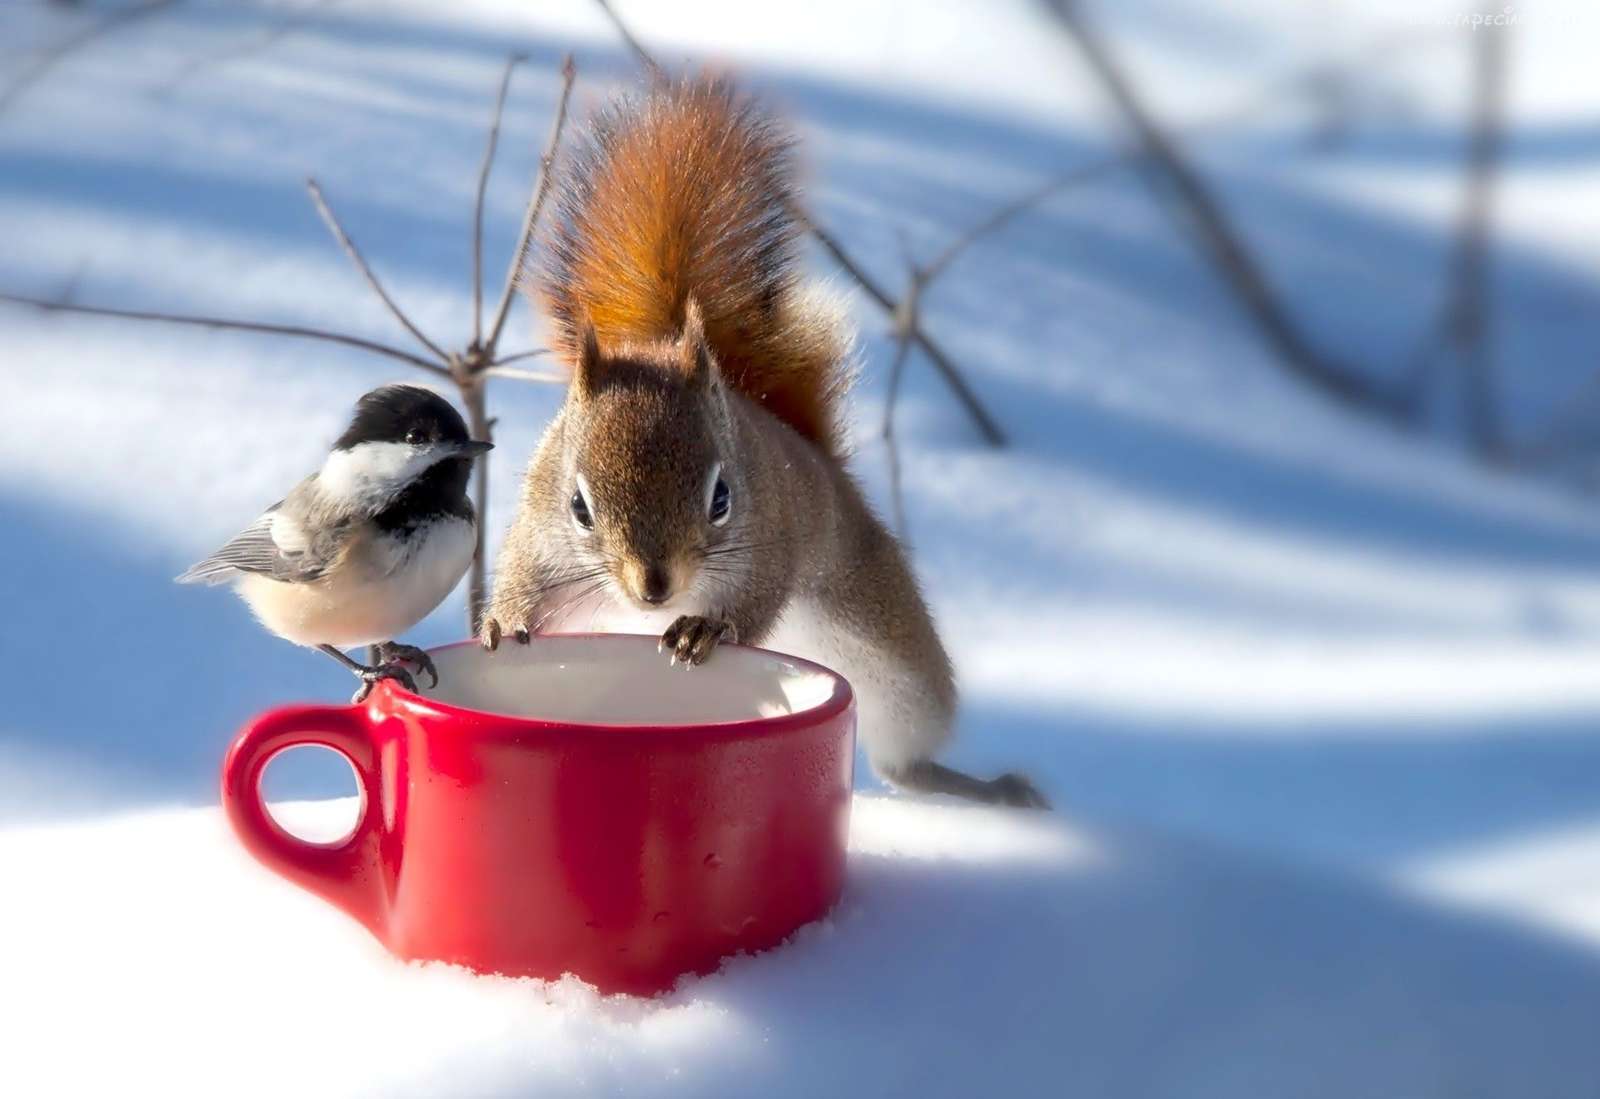 Winterfreundschaft zwischen einer Meise und einem Eichhörnchen Online-Puzzle